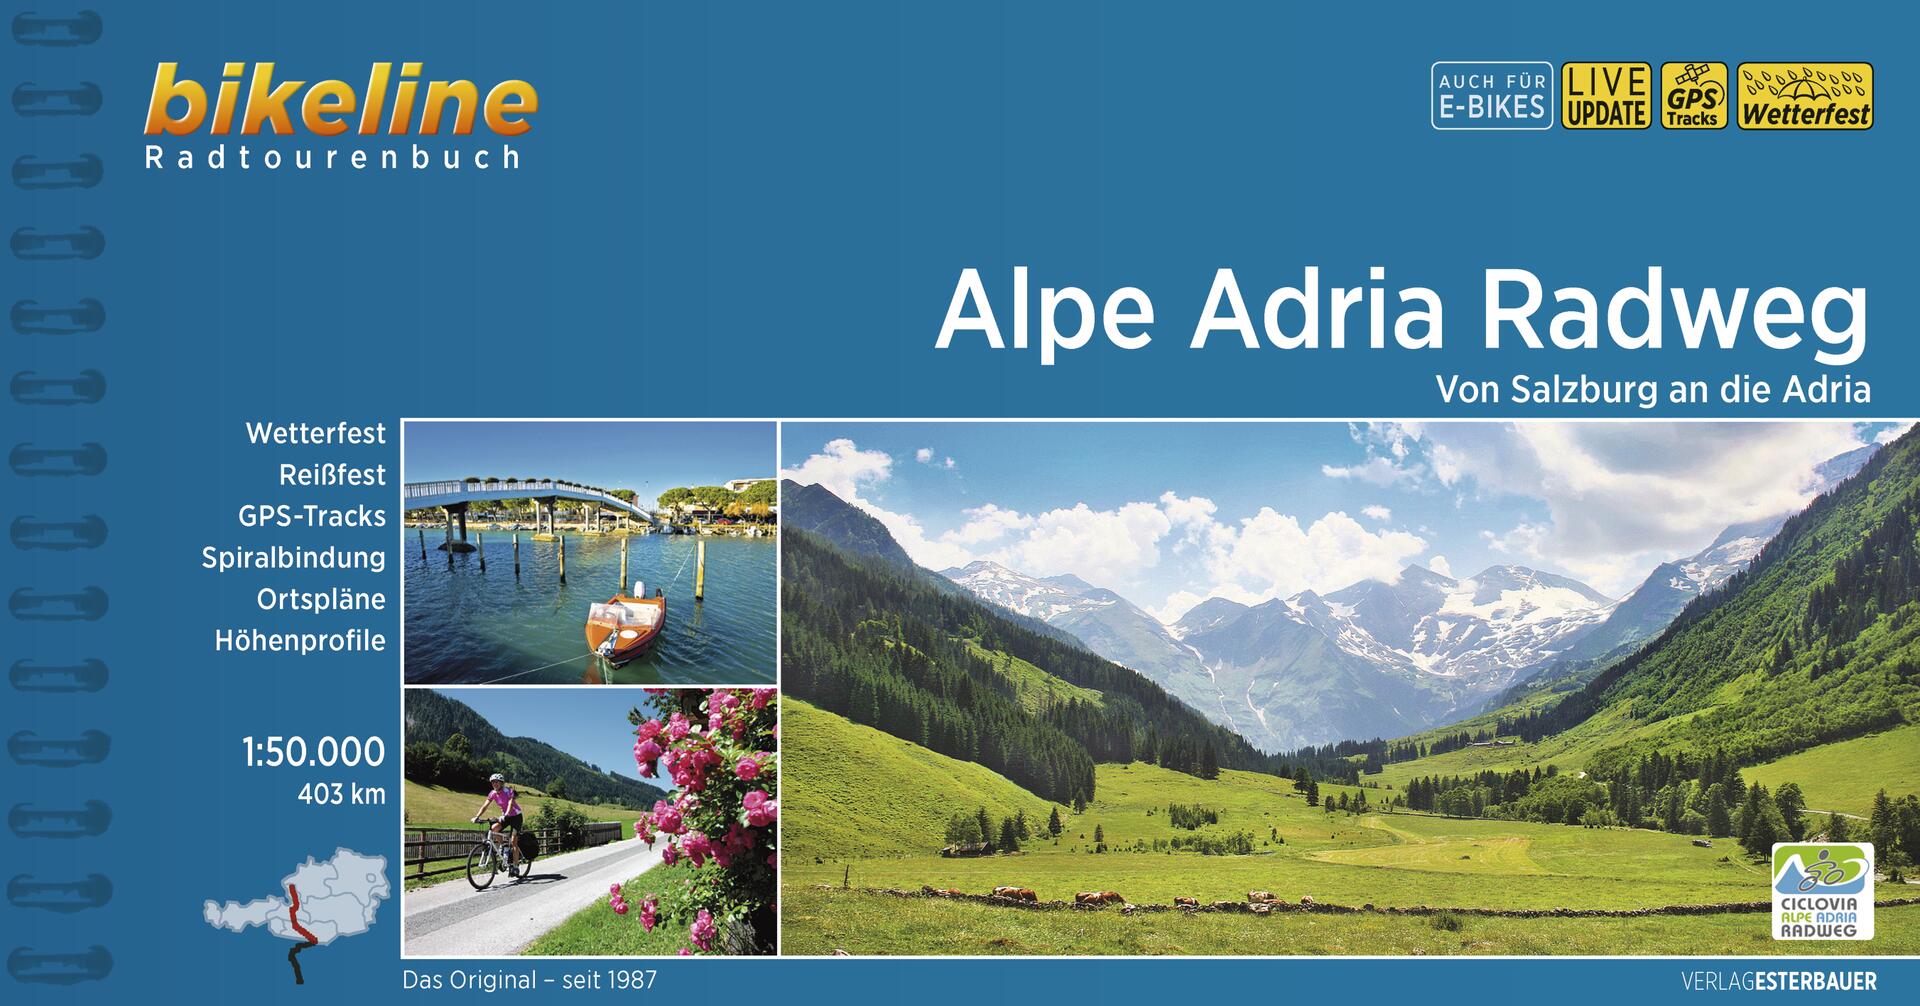 Alpe Adria Radweg - Bikeline